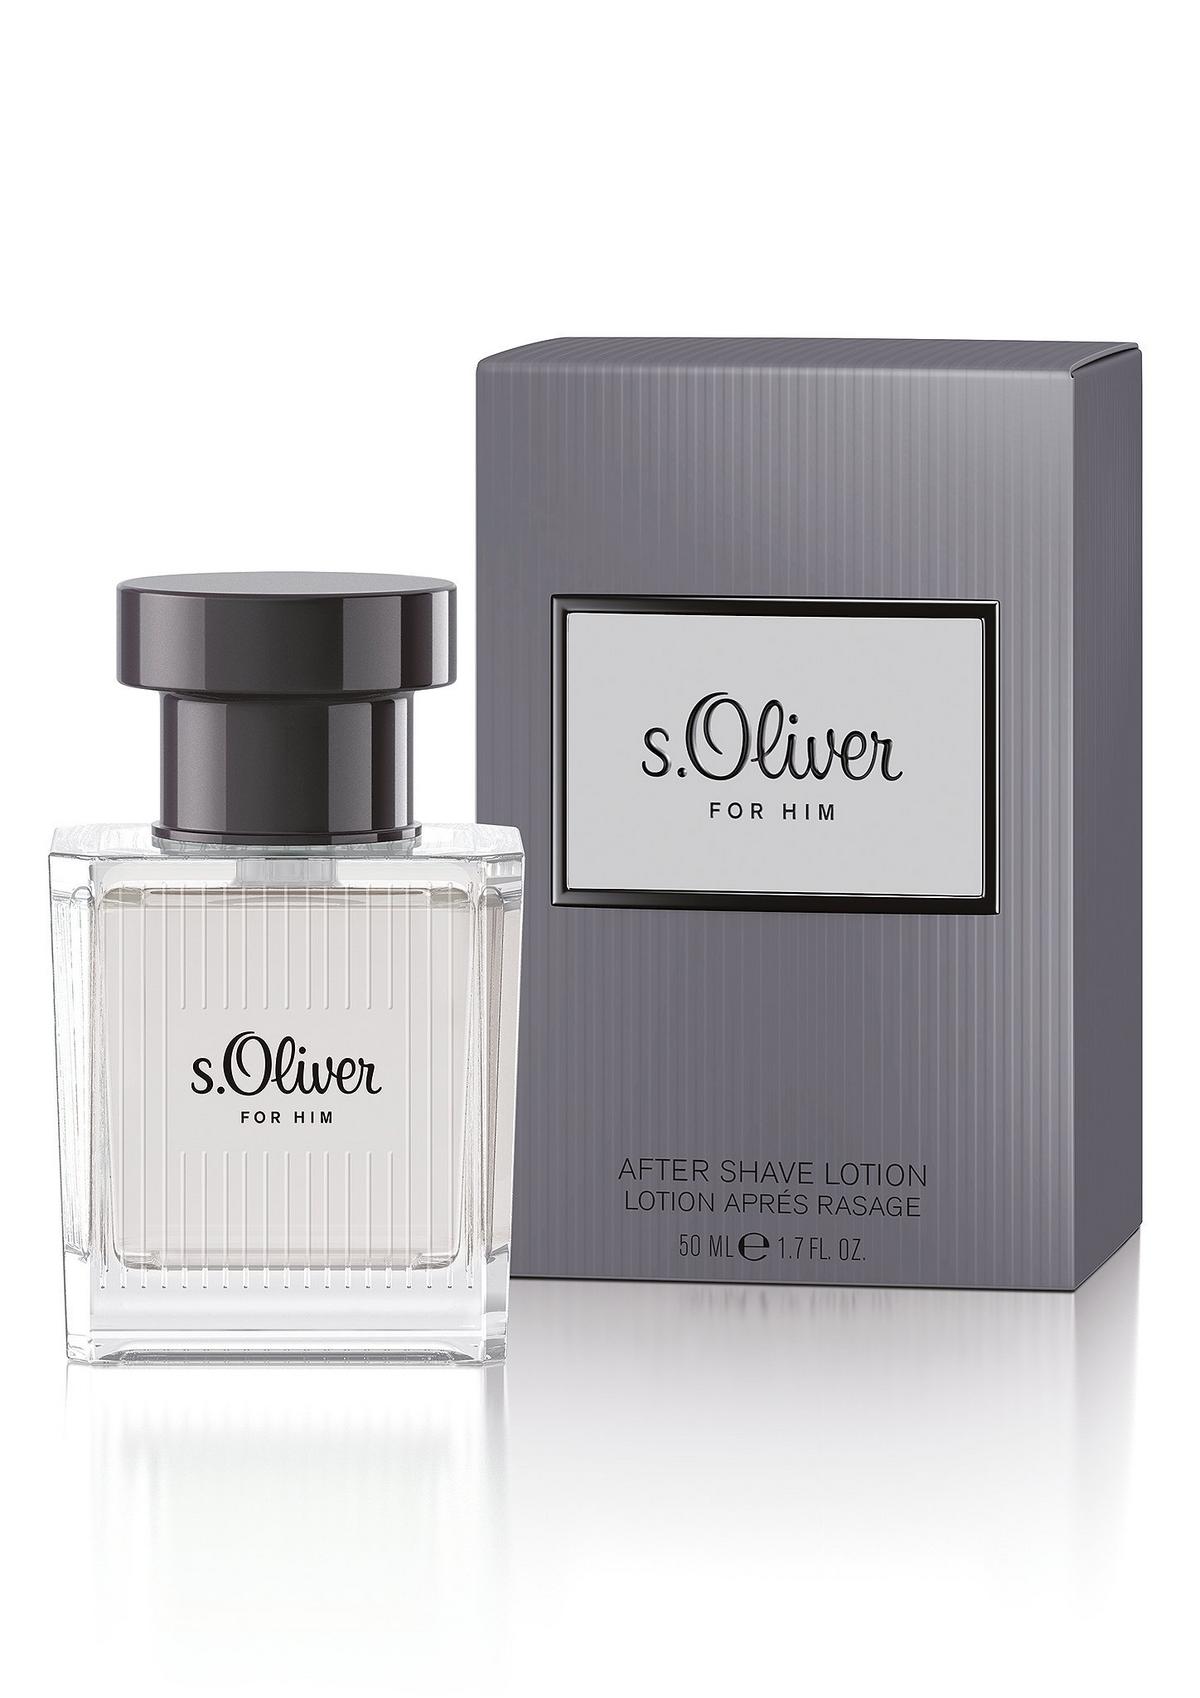 s.Oliver s.Oliver For Him aftershave, 50 ml